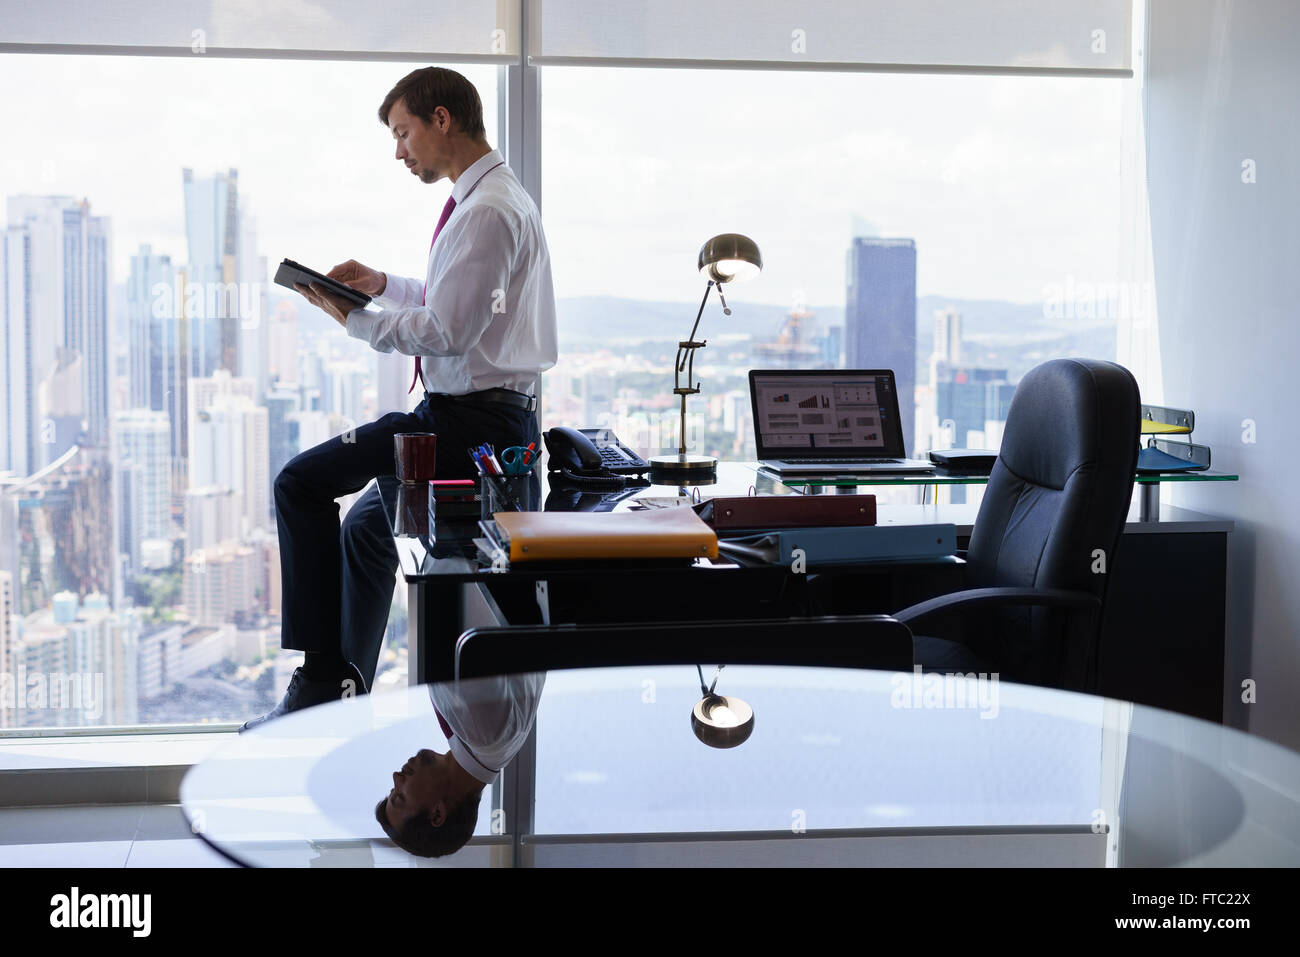 Adult businessman sitting on desk in office moderne et la lecture des nouvelles sur tablet pc. L'homme travaille dans un gratte-ciel en vue de t Banque D'Images